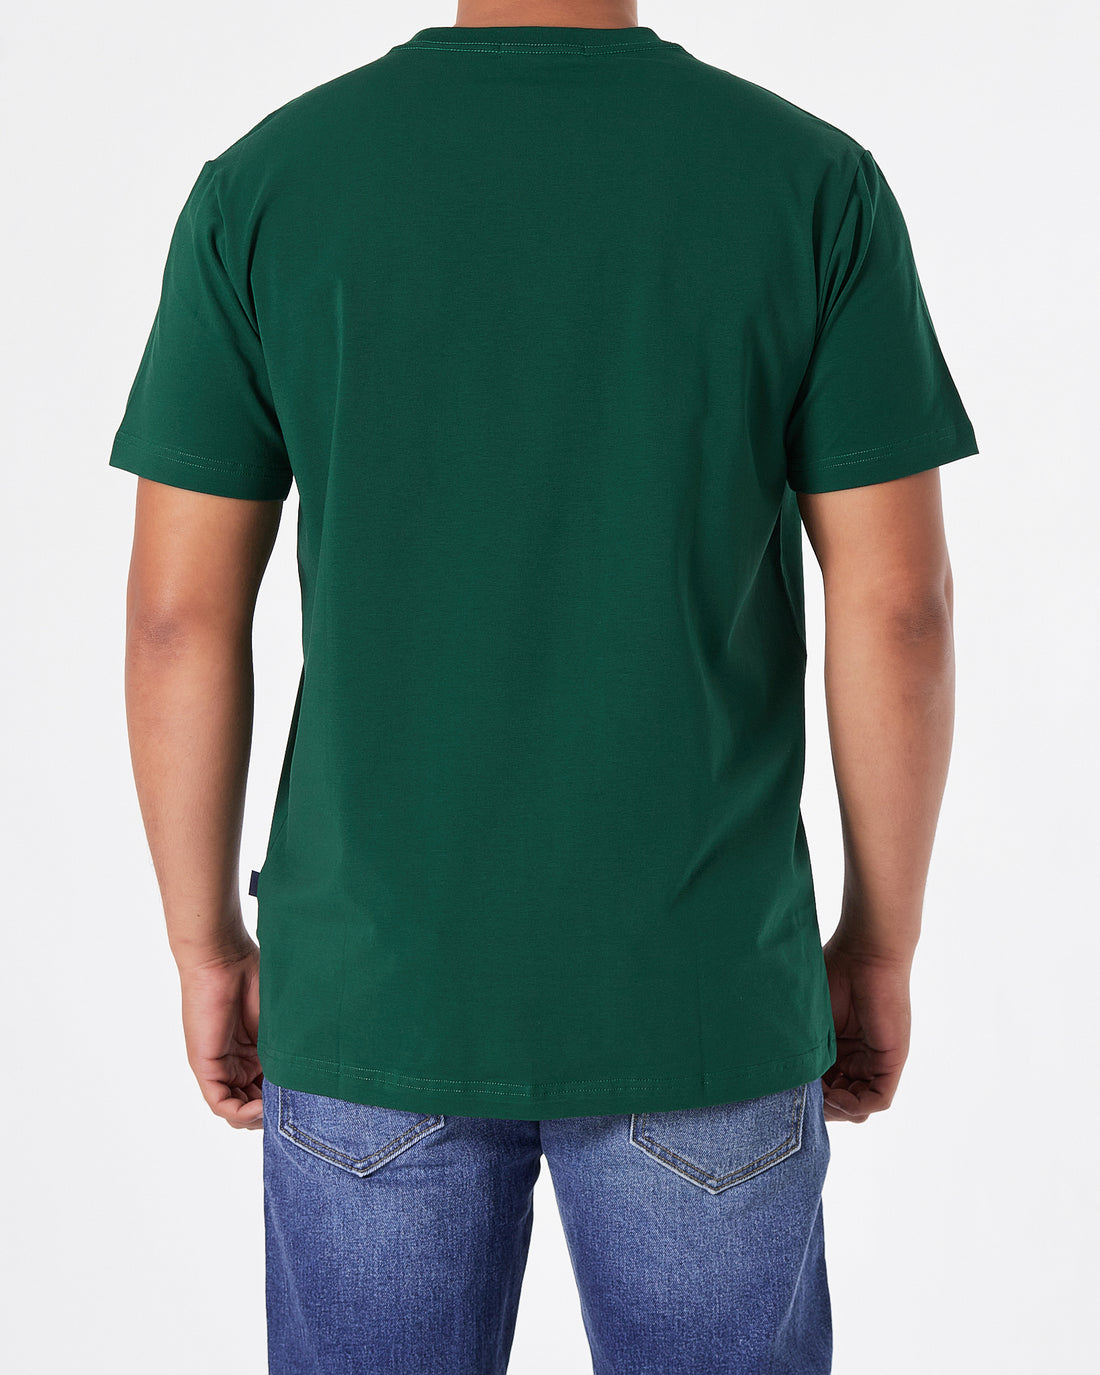 MAL Cartoon Embroidered Men Green T-Shirt 16.90